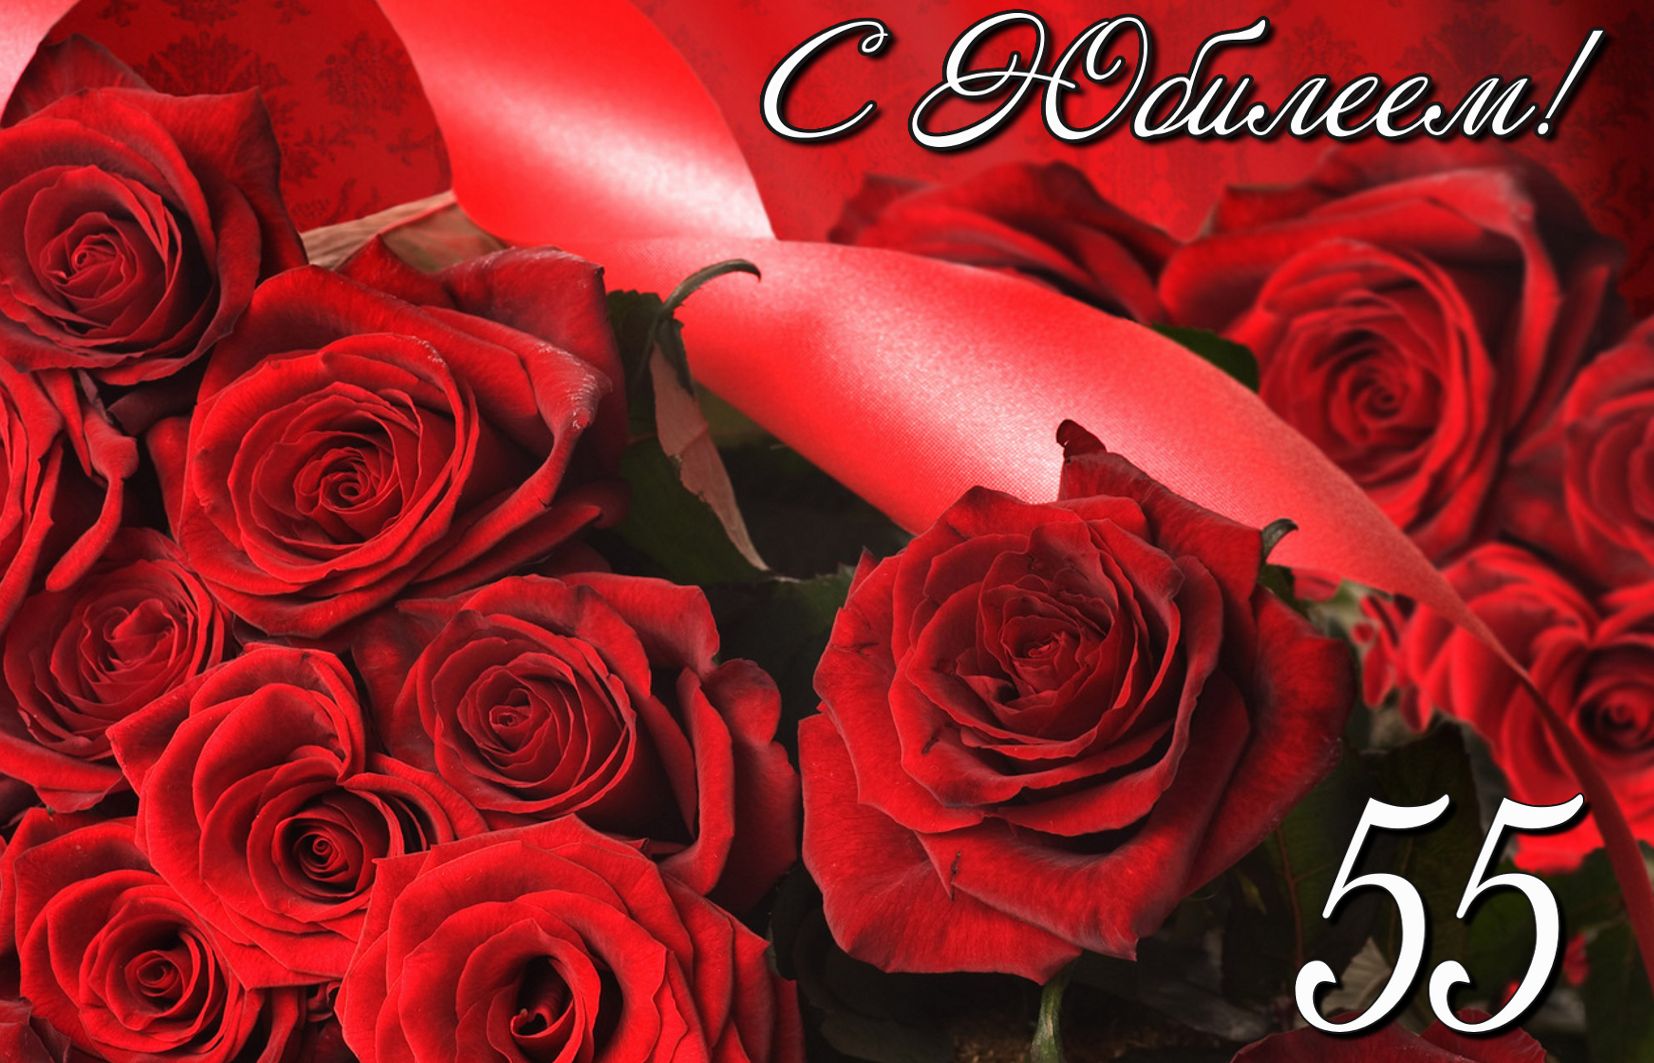 Розы в красном оформлении к юбилею 55 лет